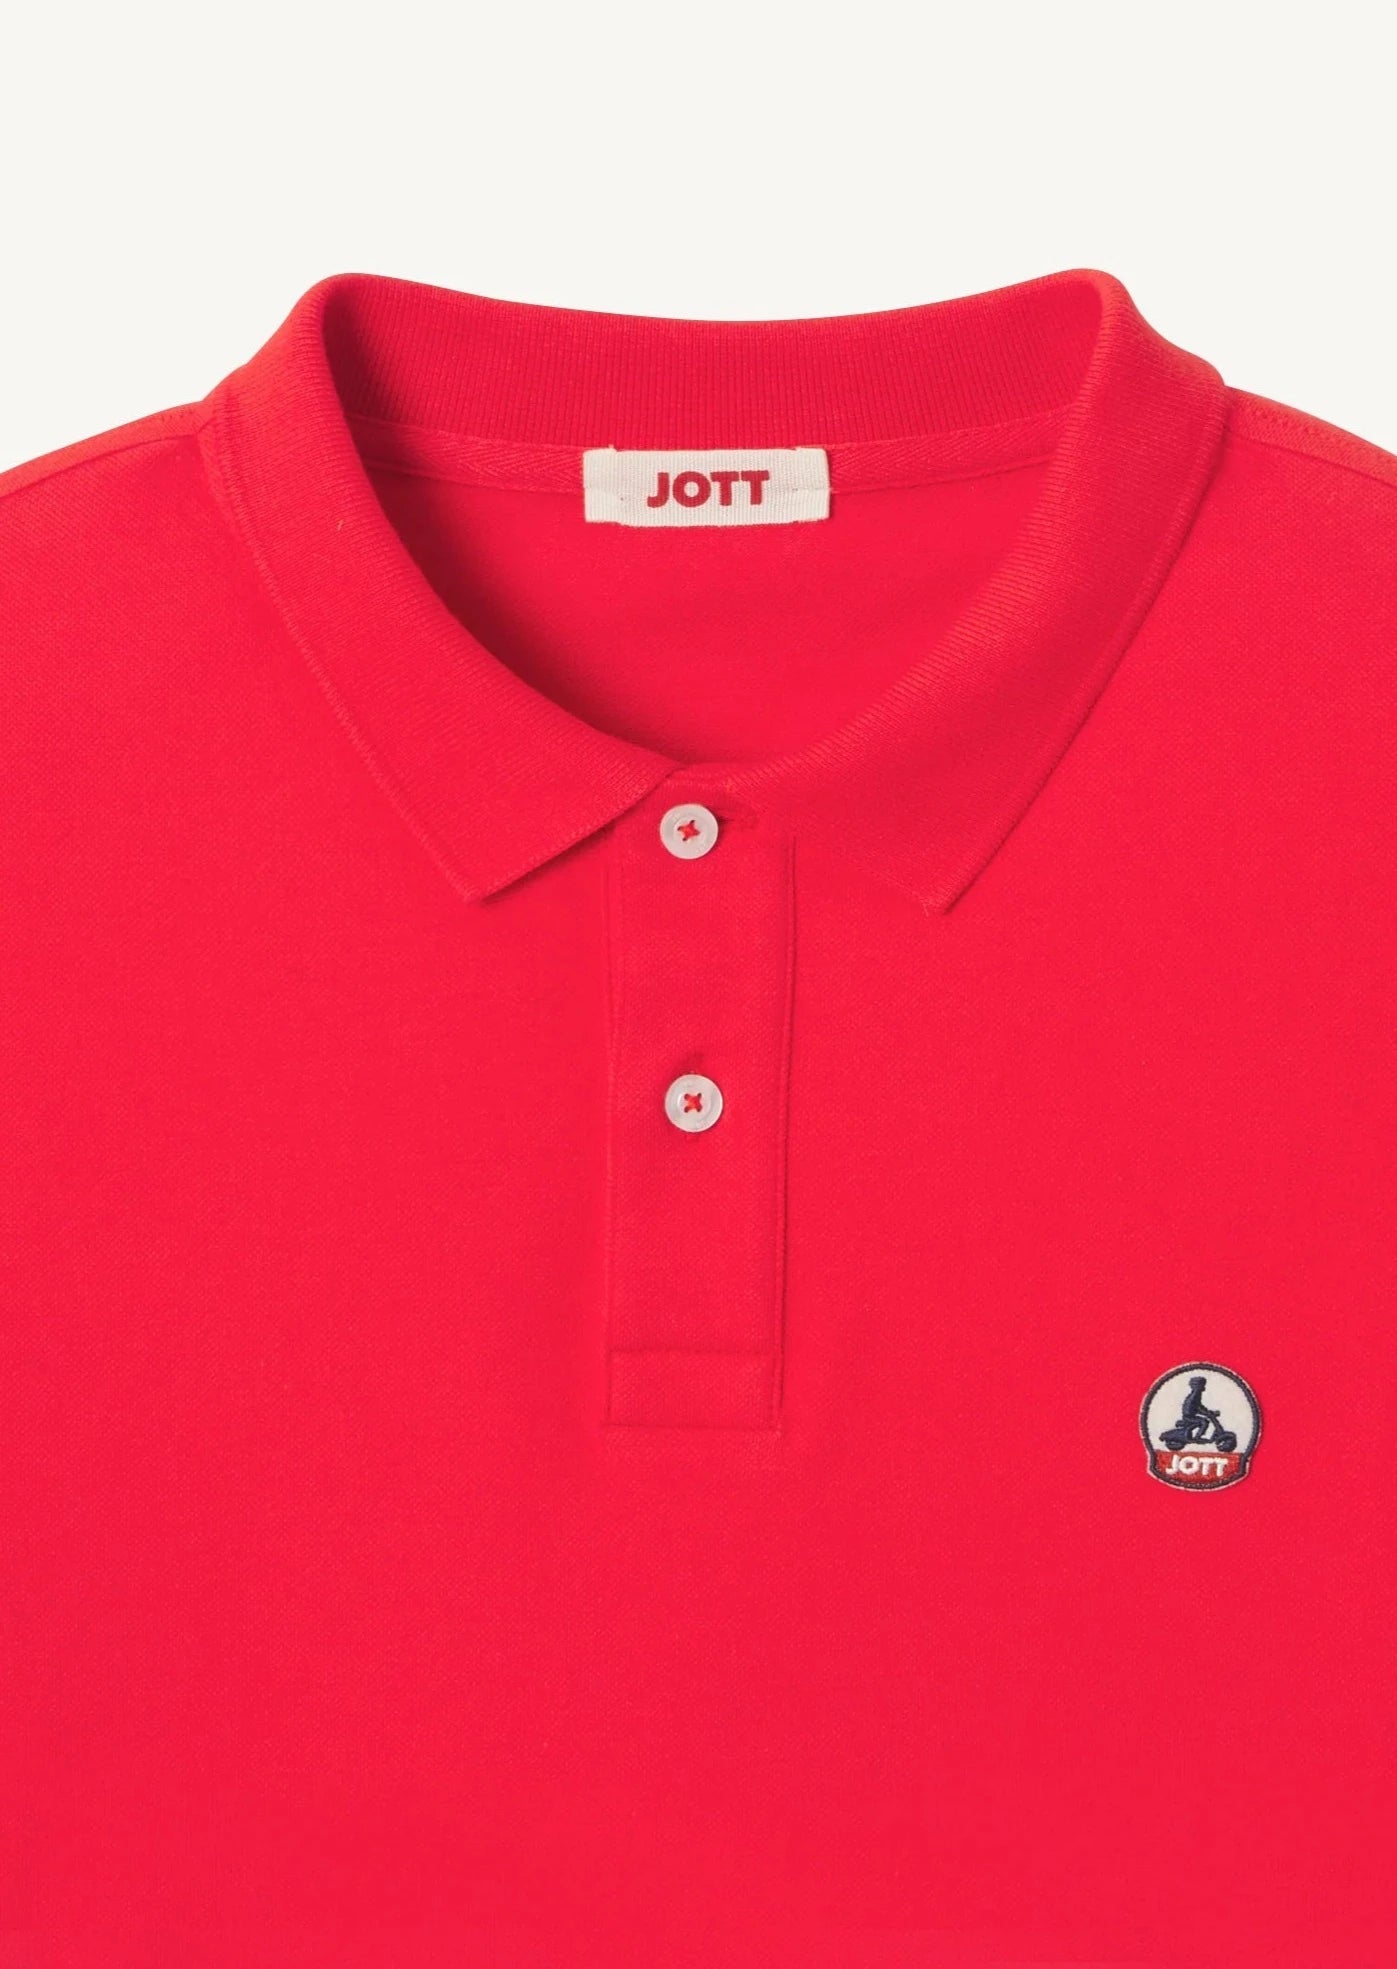 Polo homme JOTT rouge coton bio | Georgespaul